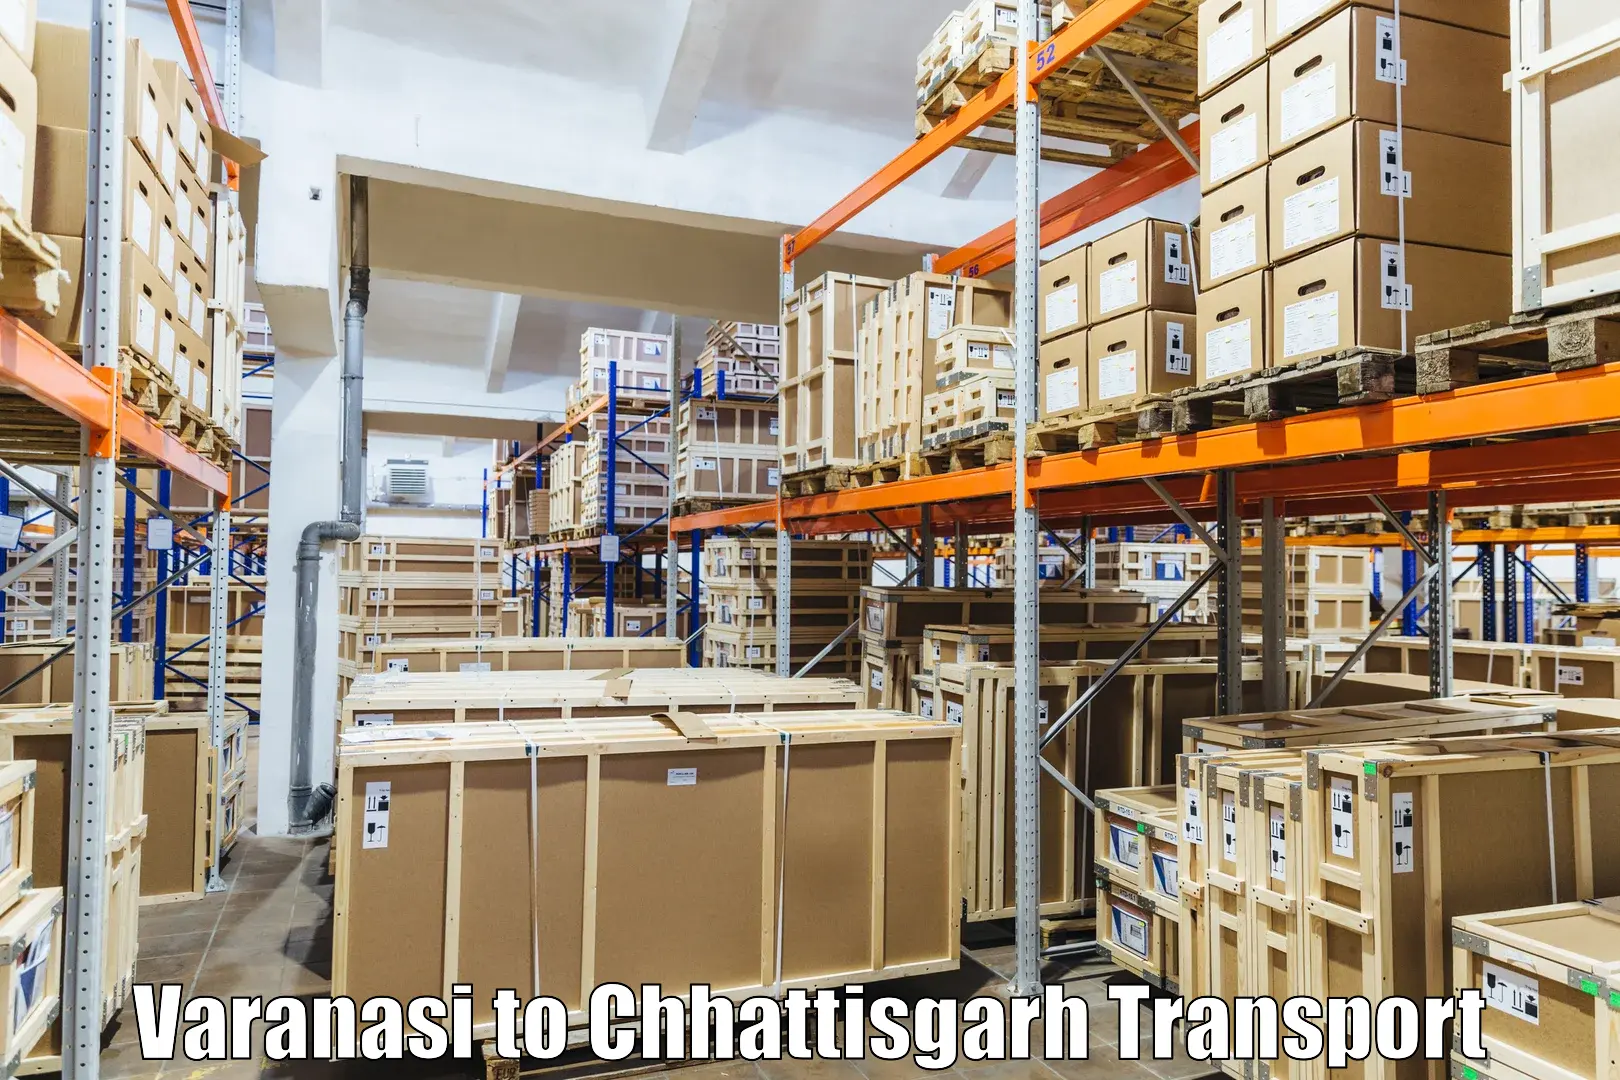 Interstate transport services Varanasi to Patna Chhattisgarh